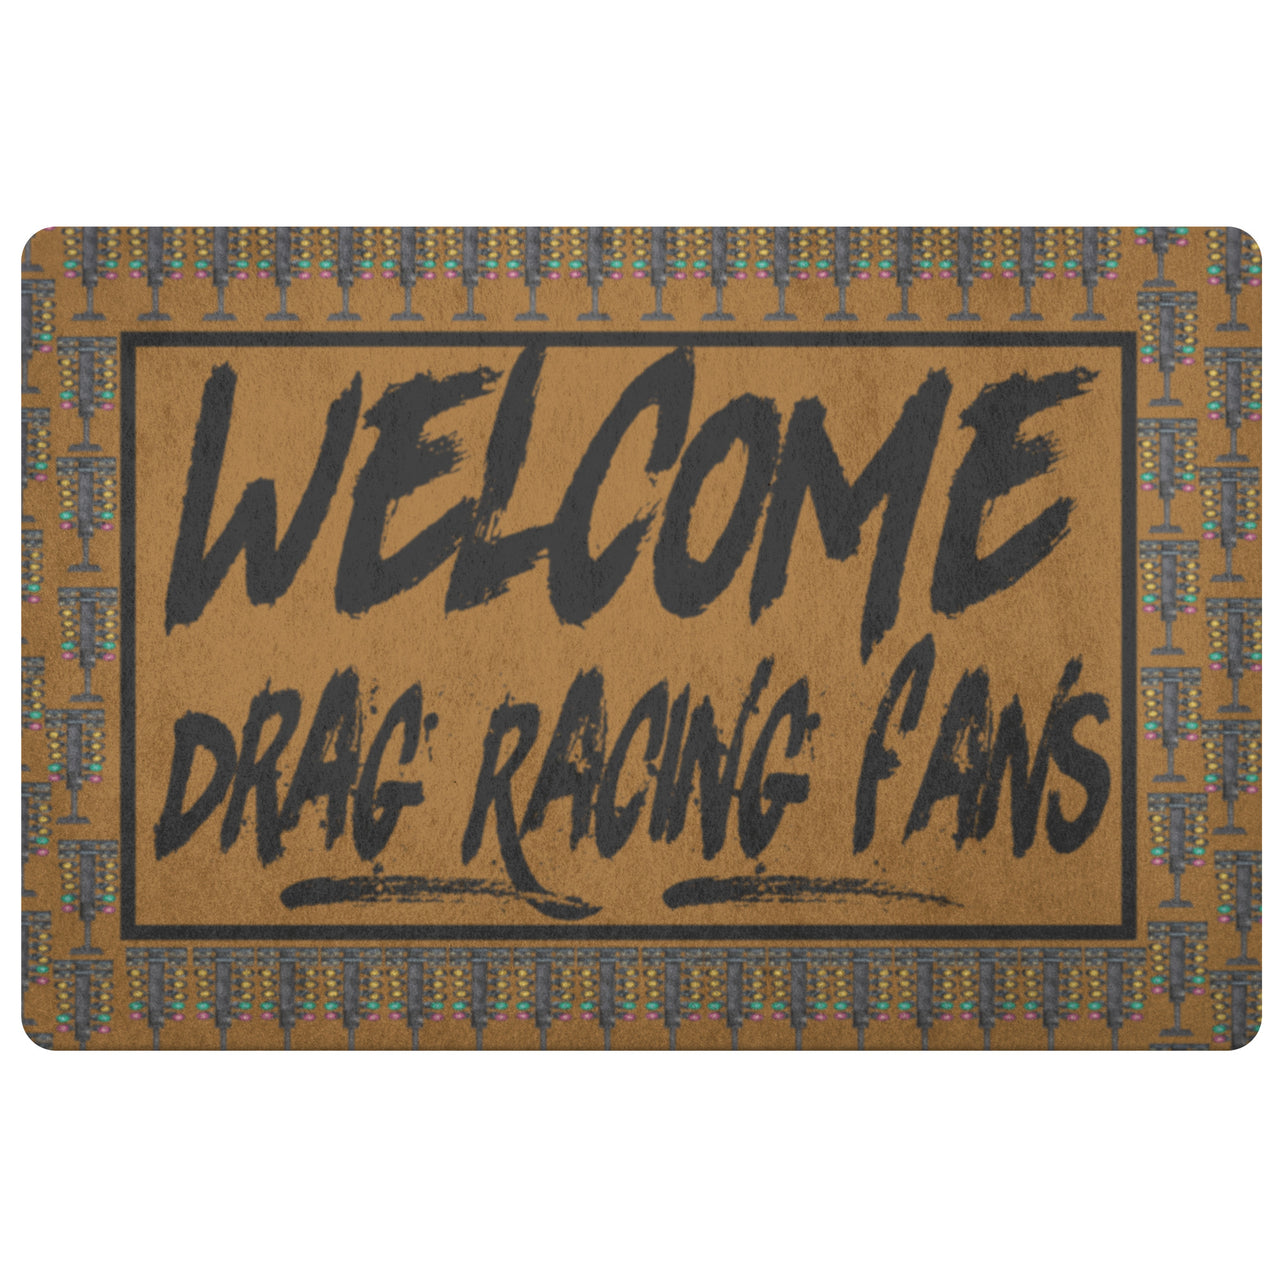 Welcome Drag Racing Fans Doormat